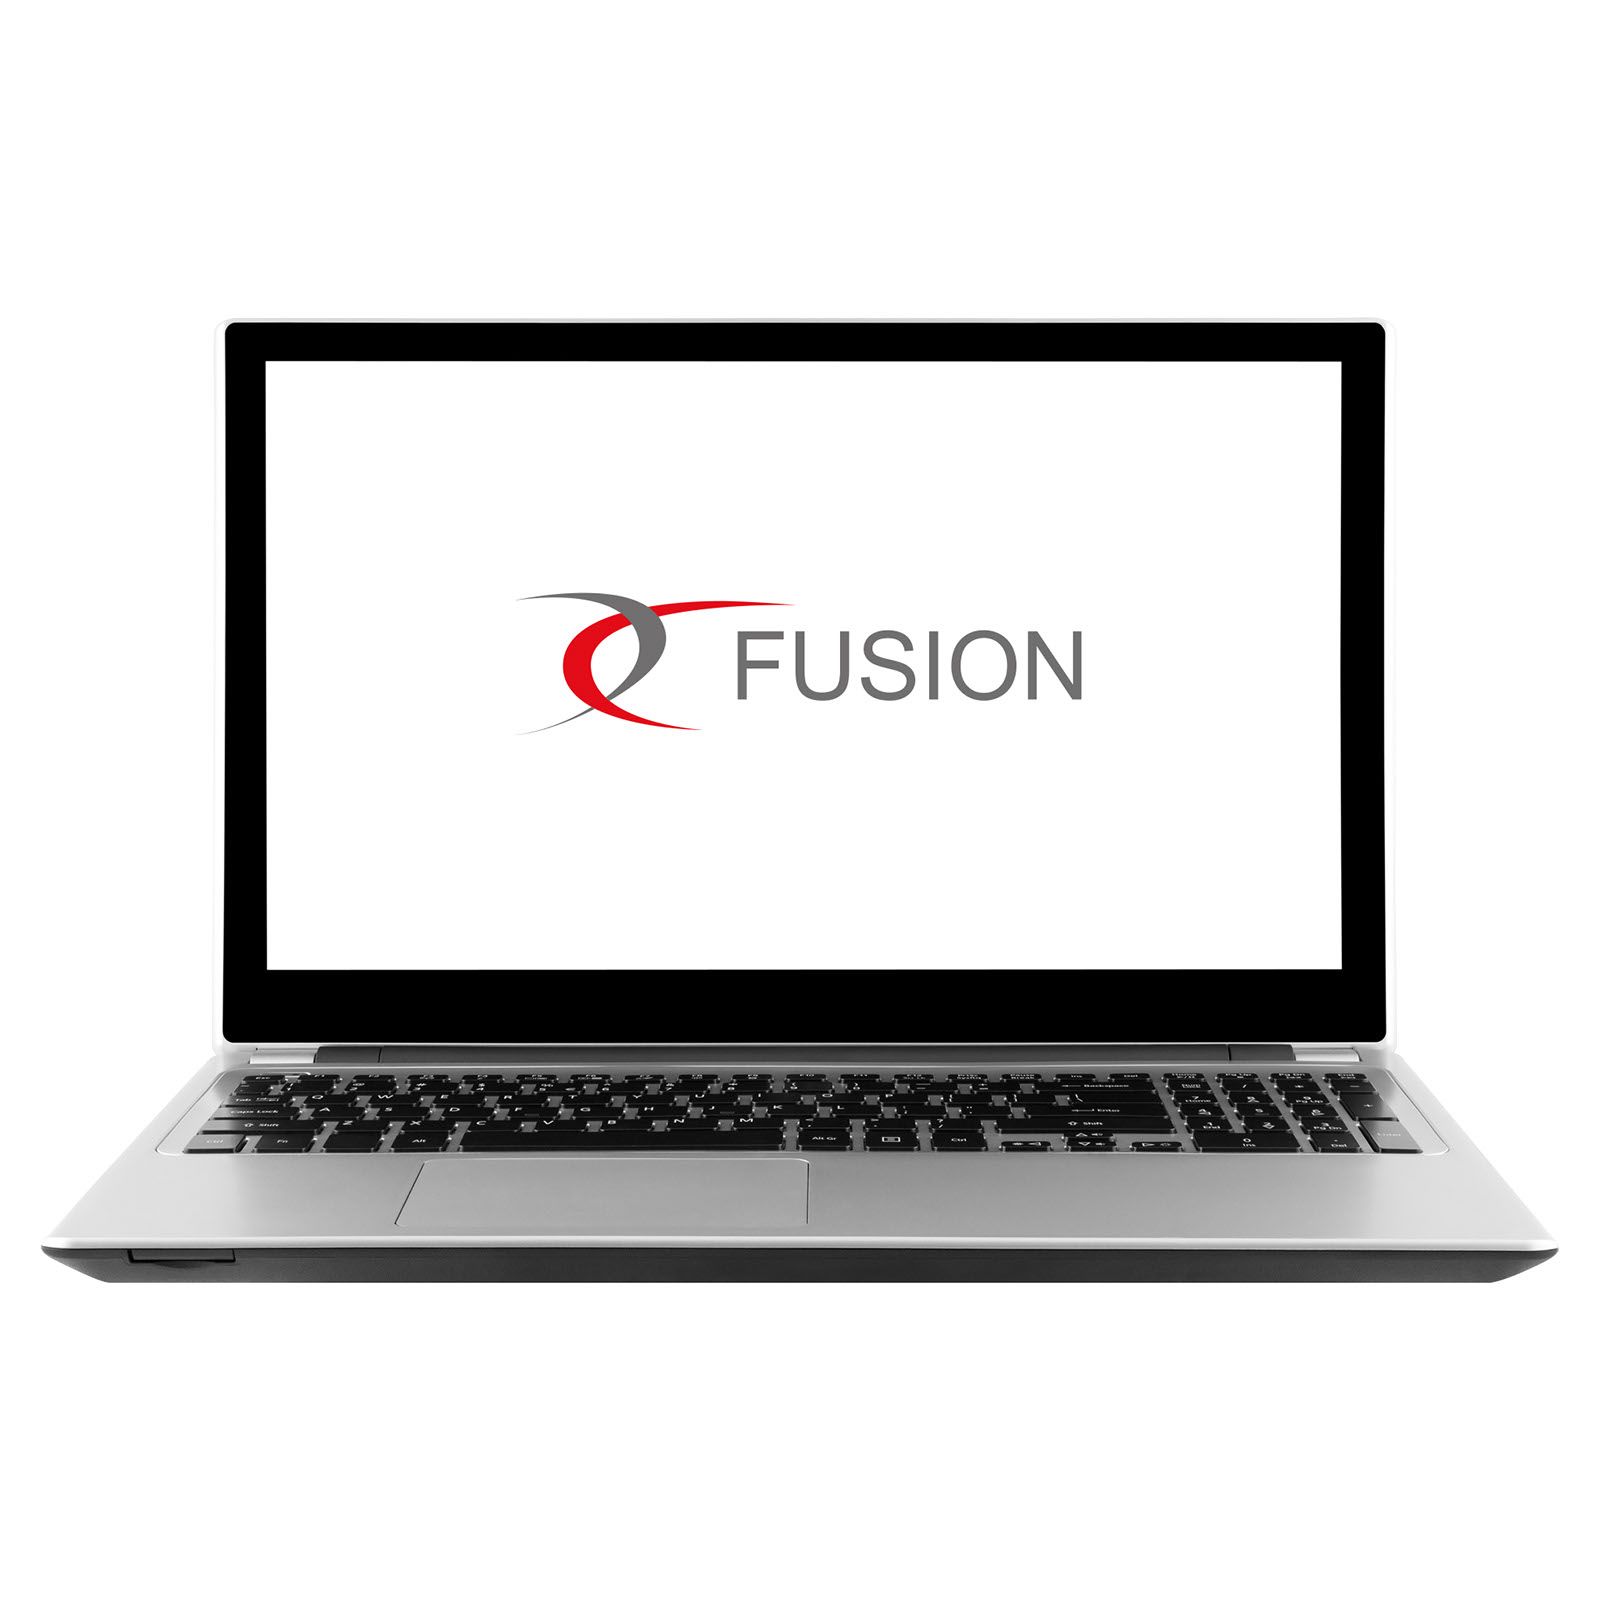 Software de fusión product photo